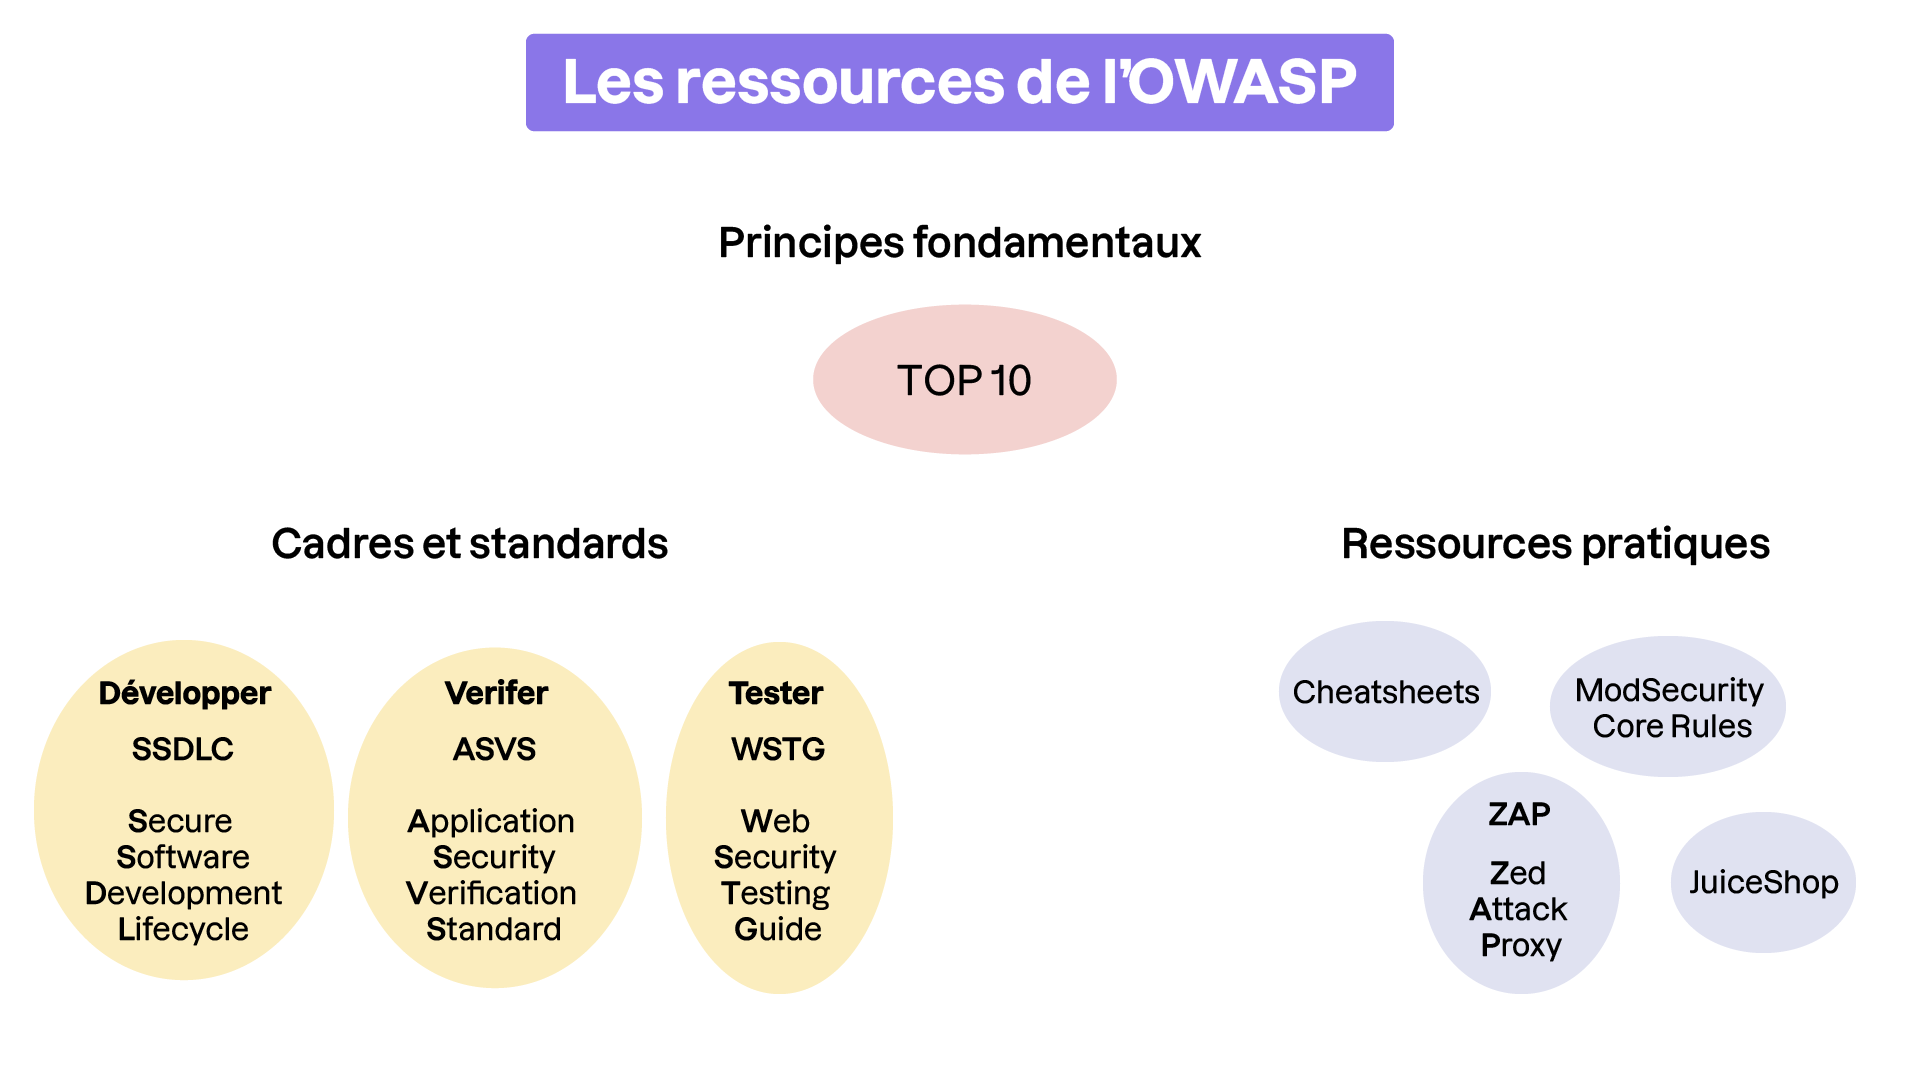 Schéma des ressources de l'OWASP : au centre, le principe fondamental TOP 10. À gauche, Cadres et standards avec Développer et SSDLC., Vérifier et  ASVS. Tester et WSTG. À droite, Ressources pratiques avec Cheatsheets, ModSecurity Core Rules, ZAP et